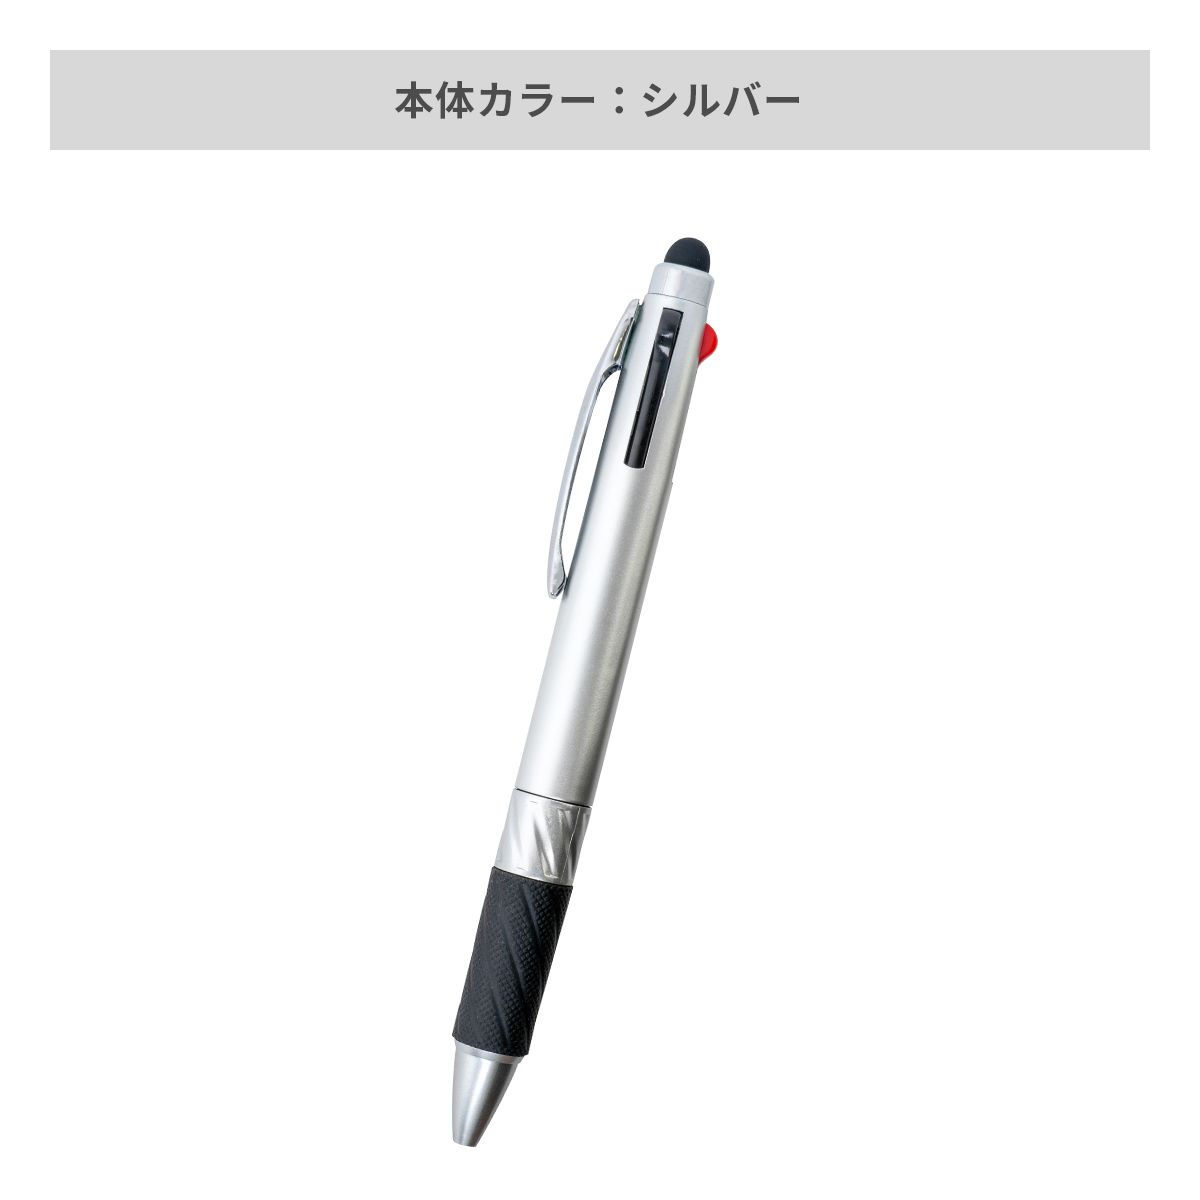 タッチペン付3色ボールペン【多機能ペン / パッド印刷】 画像4